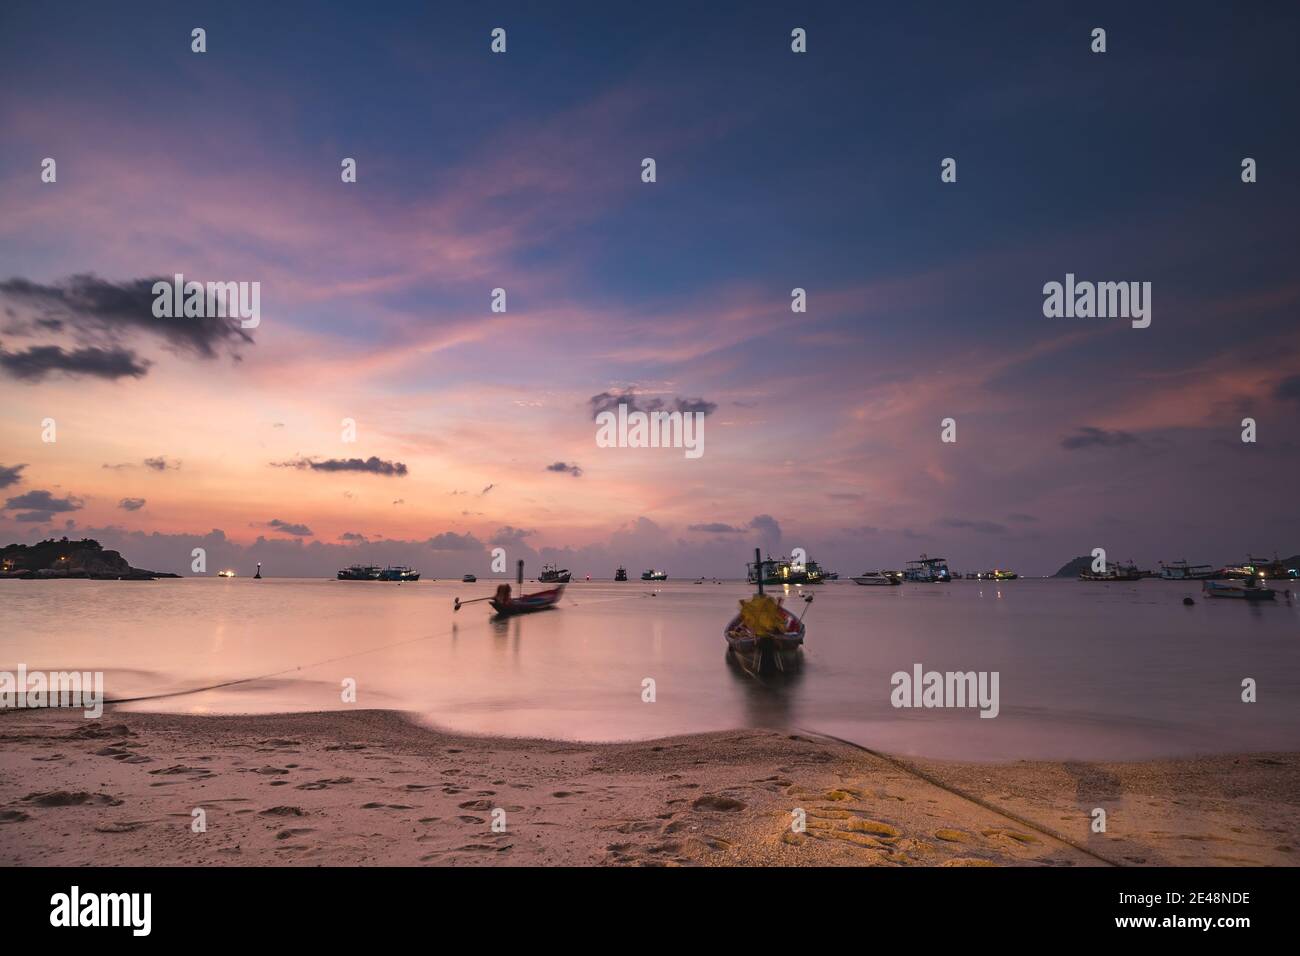 Thailand Ocean Pier: Schiffe, Boote, Yachten an Meeresbucht Sand Ufer des asiatischen Transport. Erstaunliche Thai Seestape Wassertransport Landschaft am Ozean Golf Hafen. Kinoreife Aufnahme mit warmem Muster Stockfoto